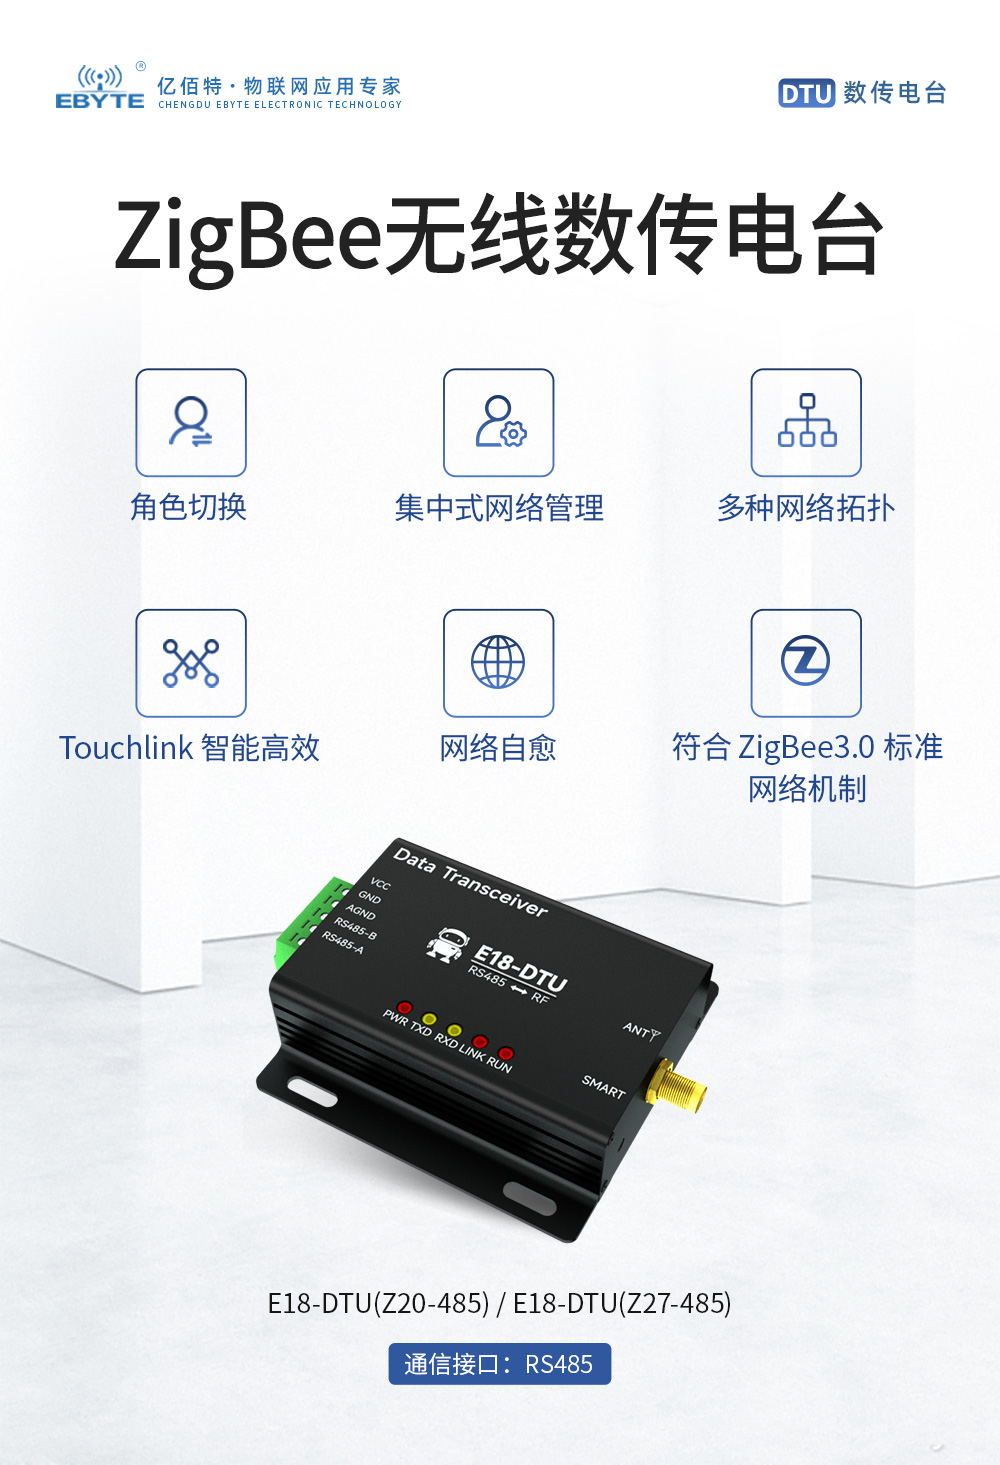 ZigBee无线数传电台 (1)